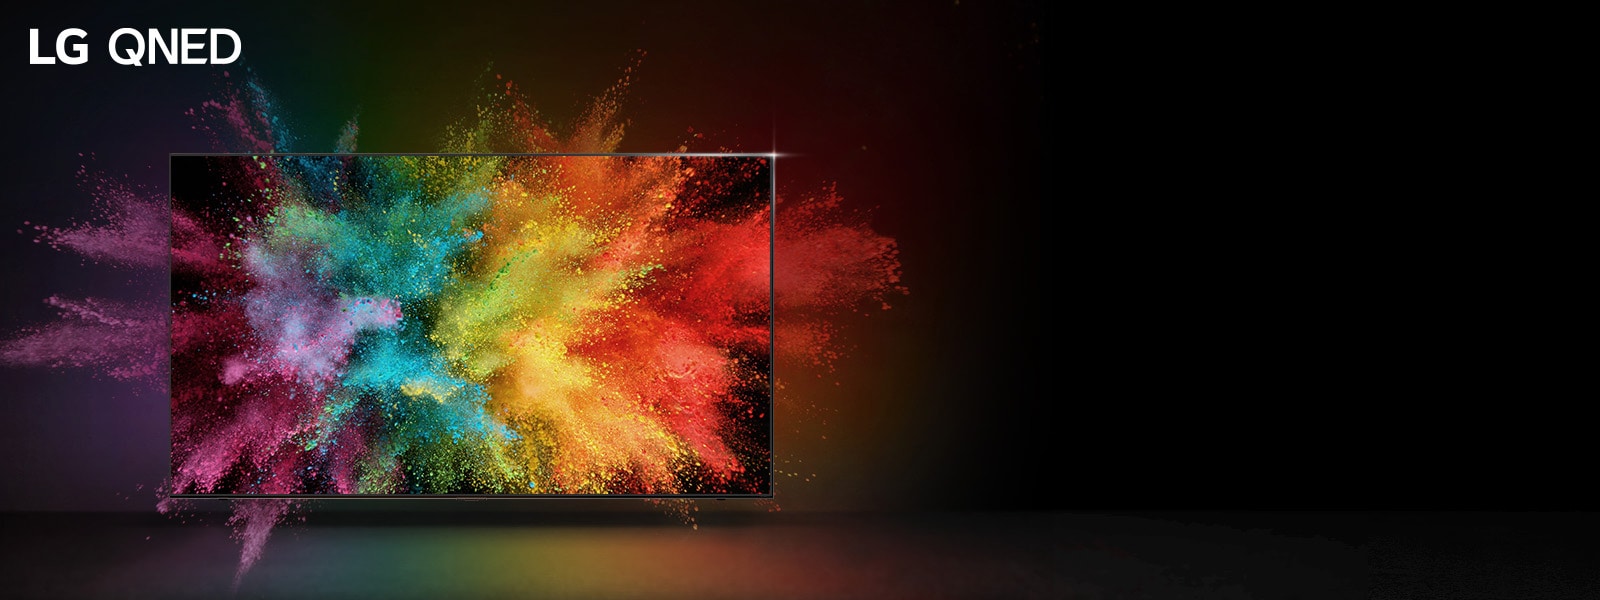 تلفاز QNED من LG في غرفة مظلمة. مساحيق مصبوغة تصنع انفجارًا من ألوان قوس قزح على التلفاز.